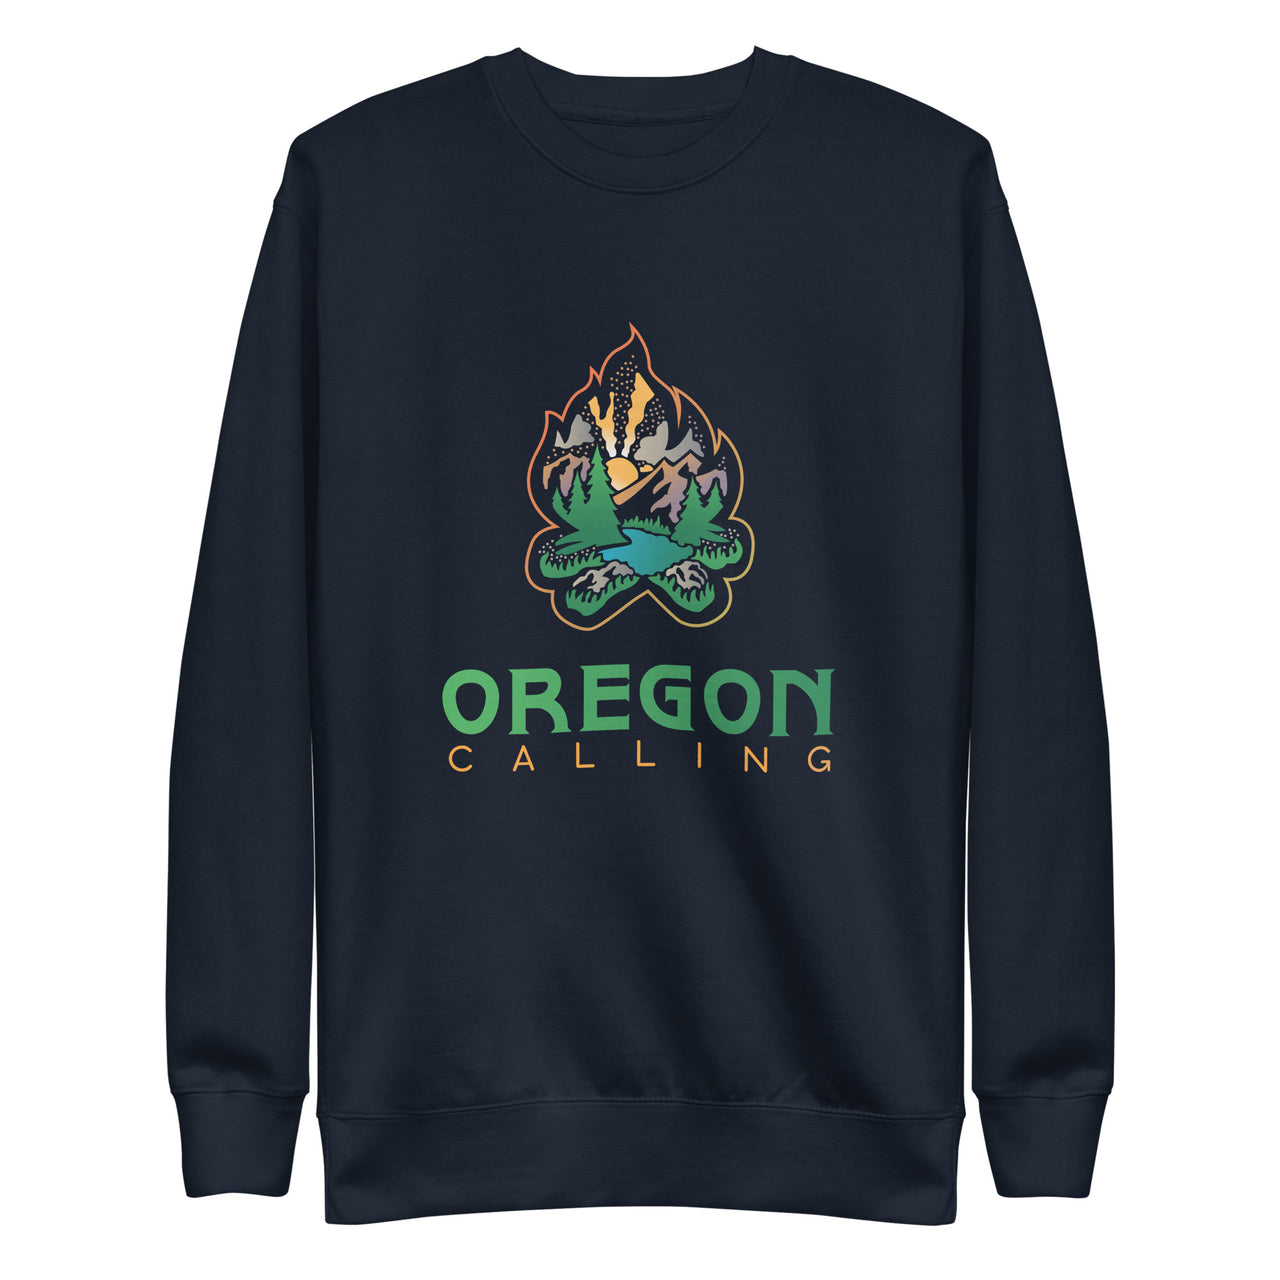 Oregon Calling - Unisex Premium Sweatshirt